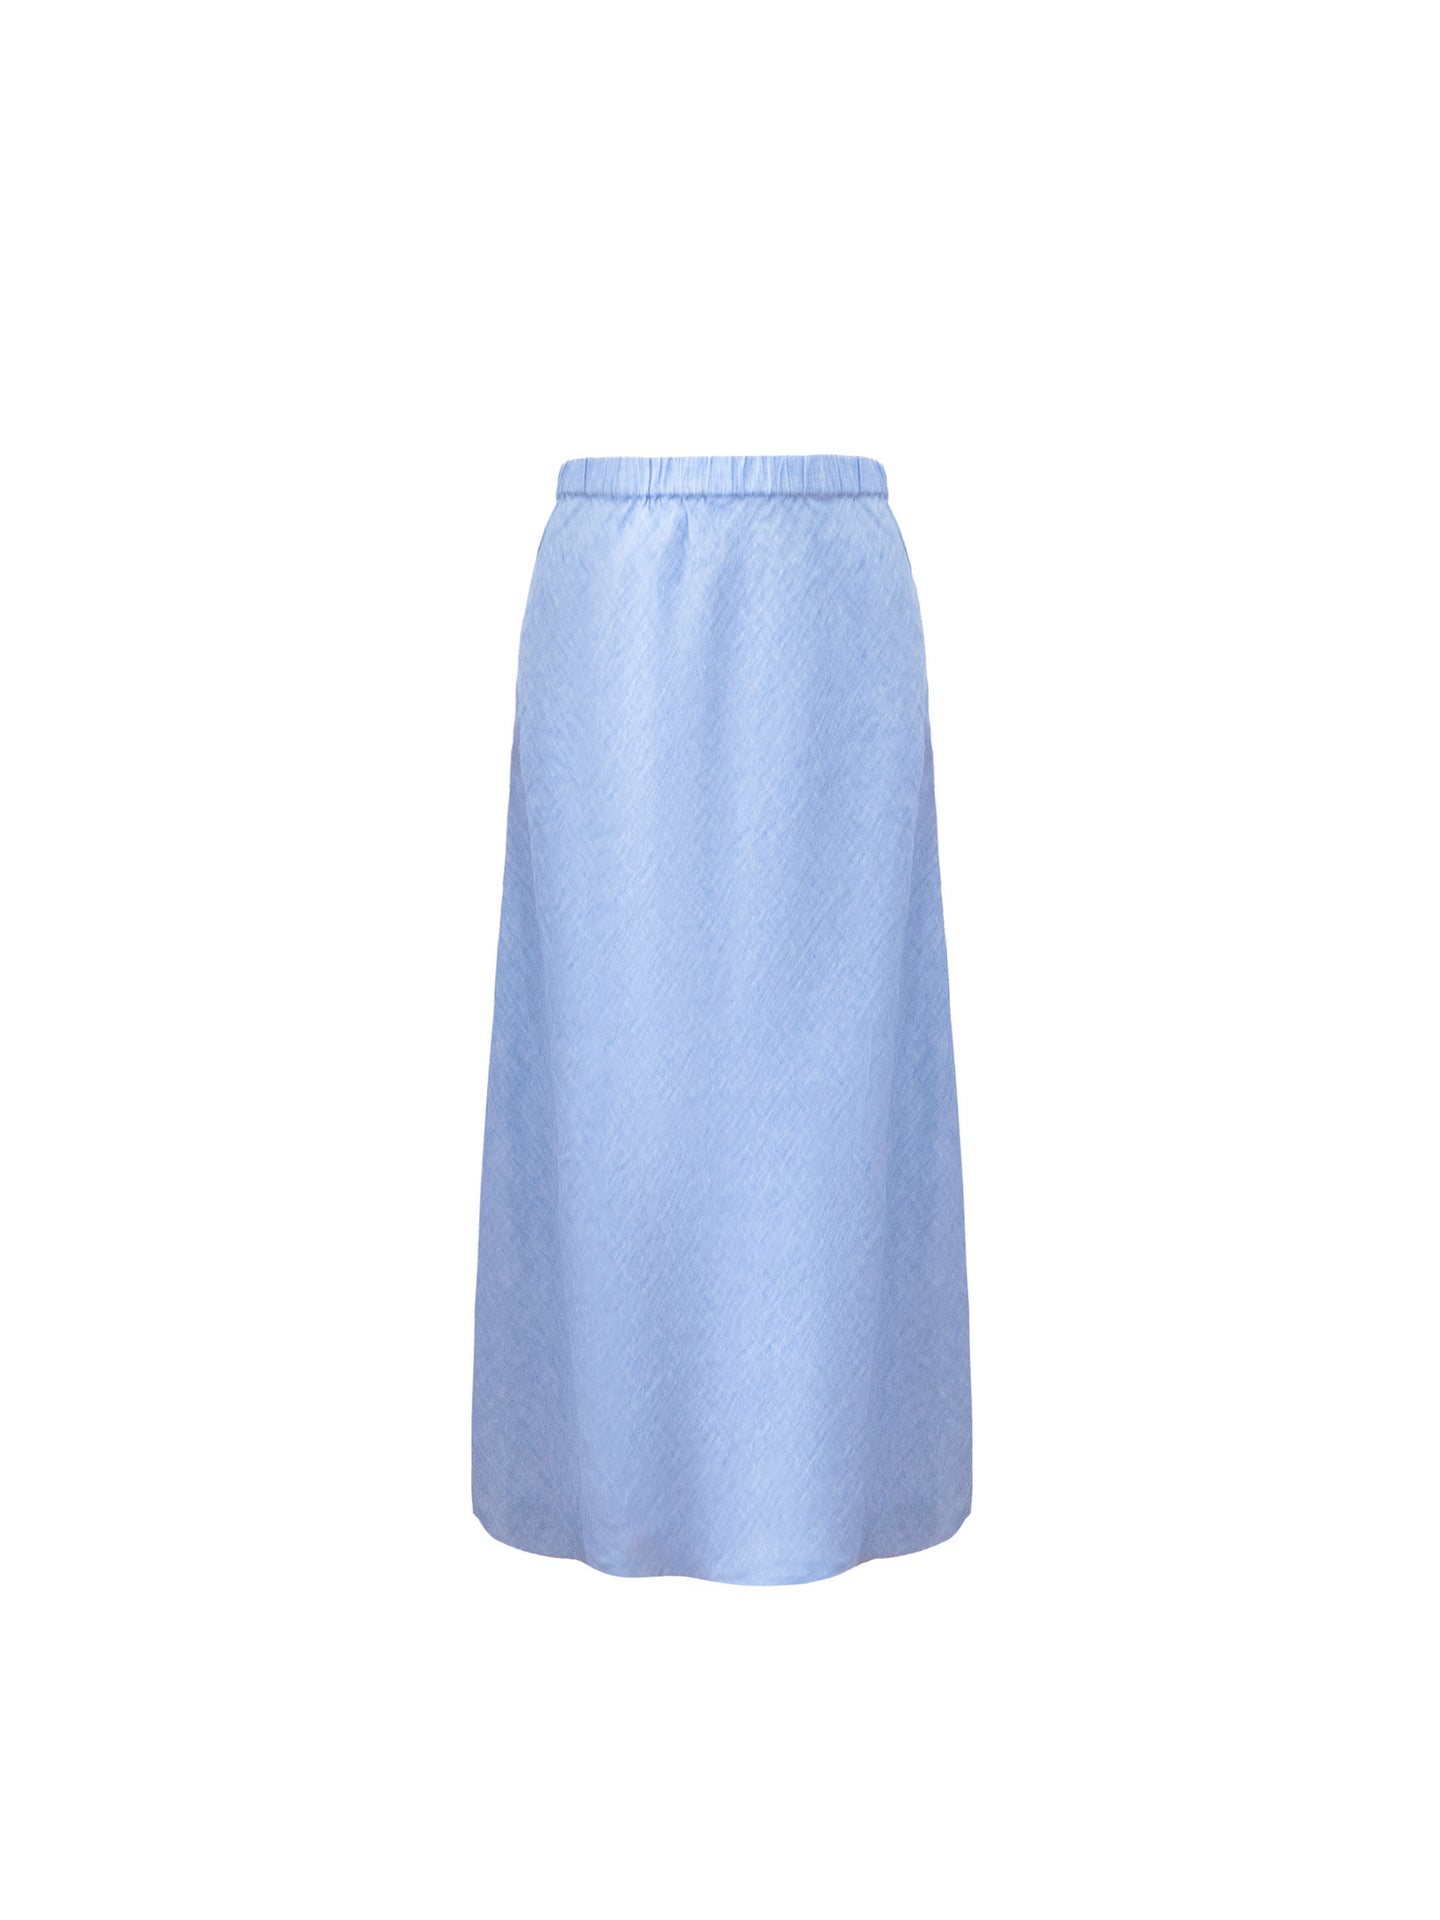 Tabby linen skirt